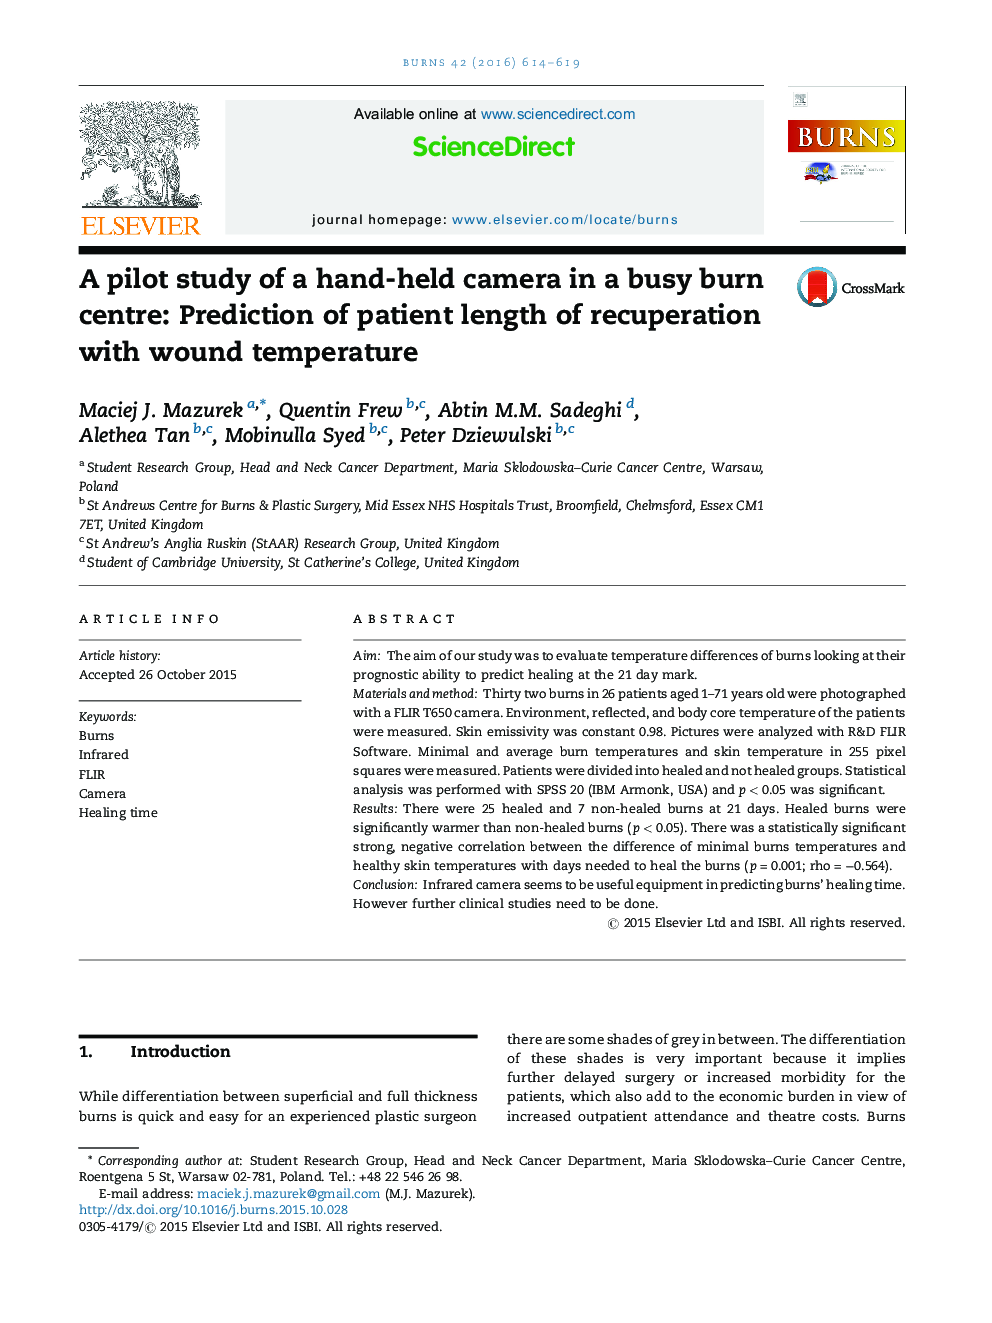 یک مطالعه آزمایشی از یک دوربین دستی در یک مرکز سوختگی مشغول: پیش بینی طول مدت بهبودی بیمار با دمای زخم